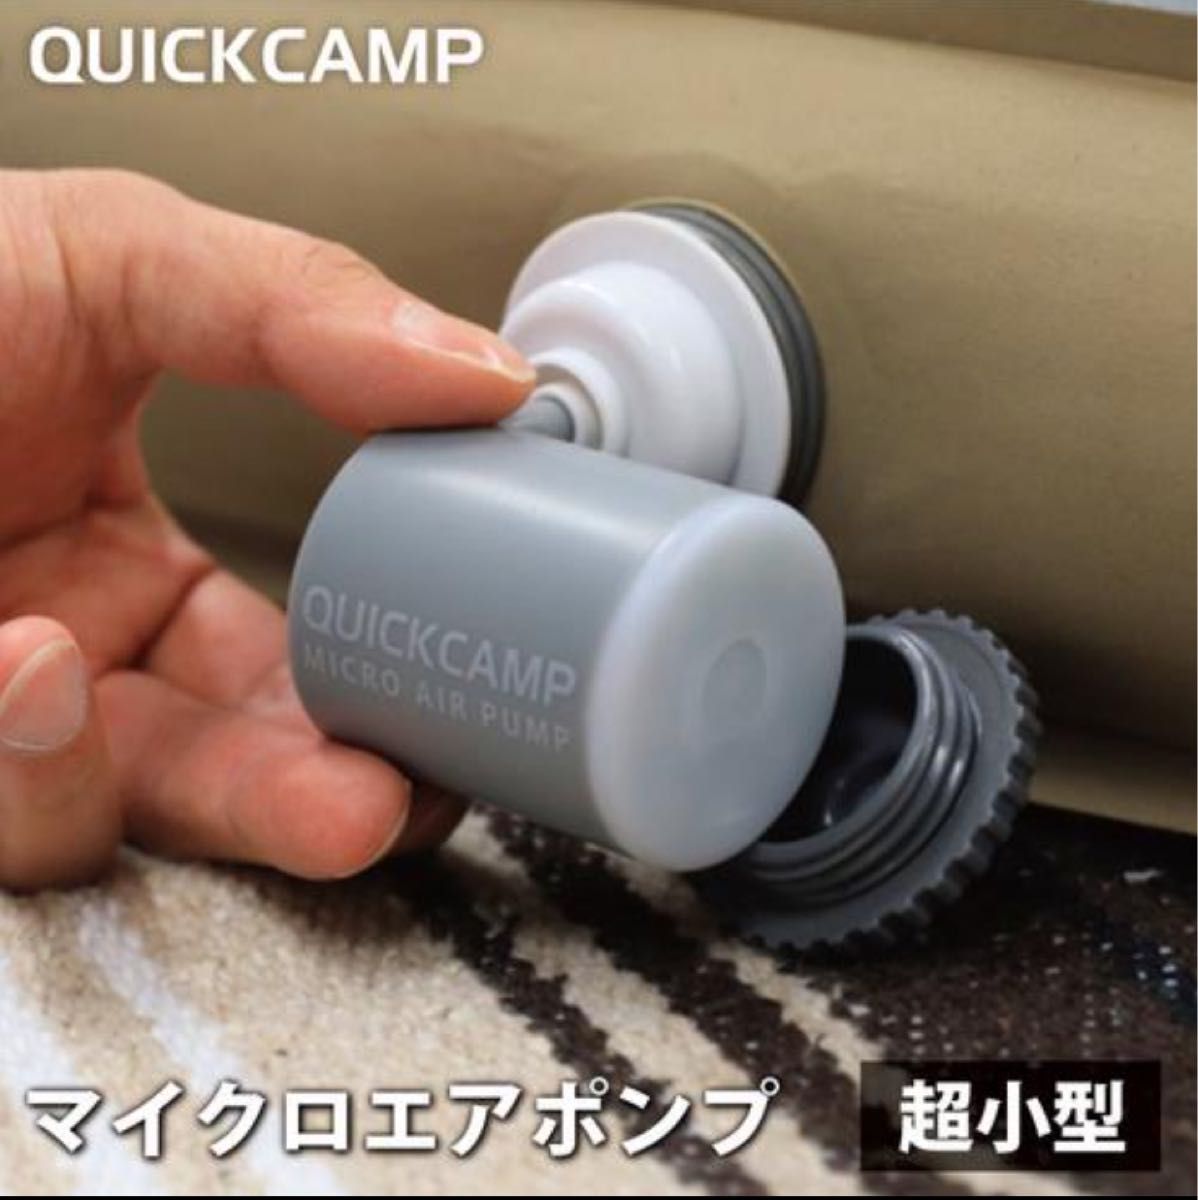 クイックキャンプ QUICKCAMP 空気入れ マイクロエアポンプ 浮輪 エアー マット LEDライト 超小型 圧縮